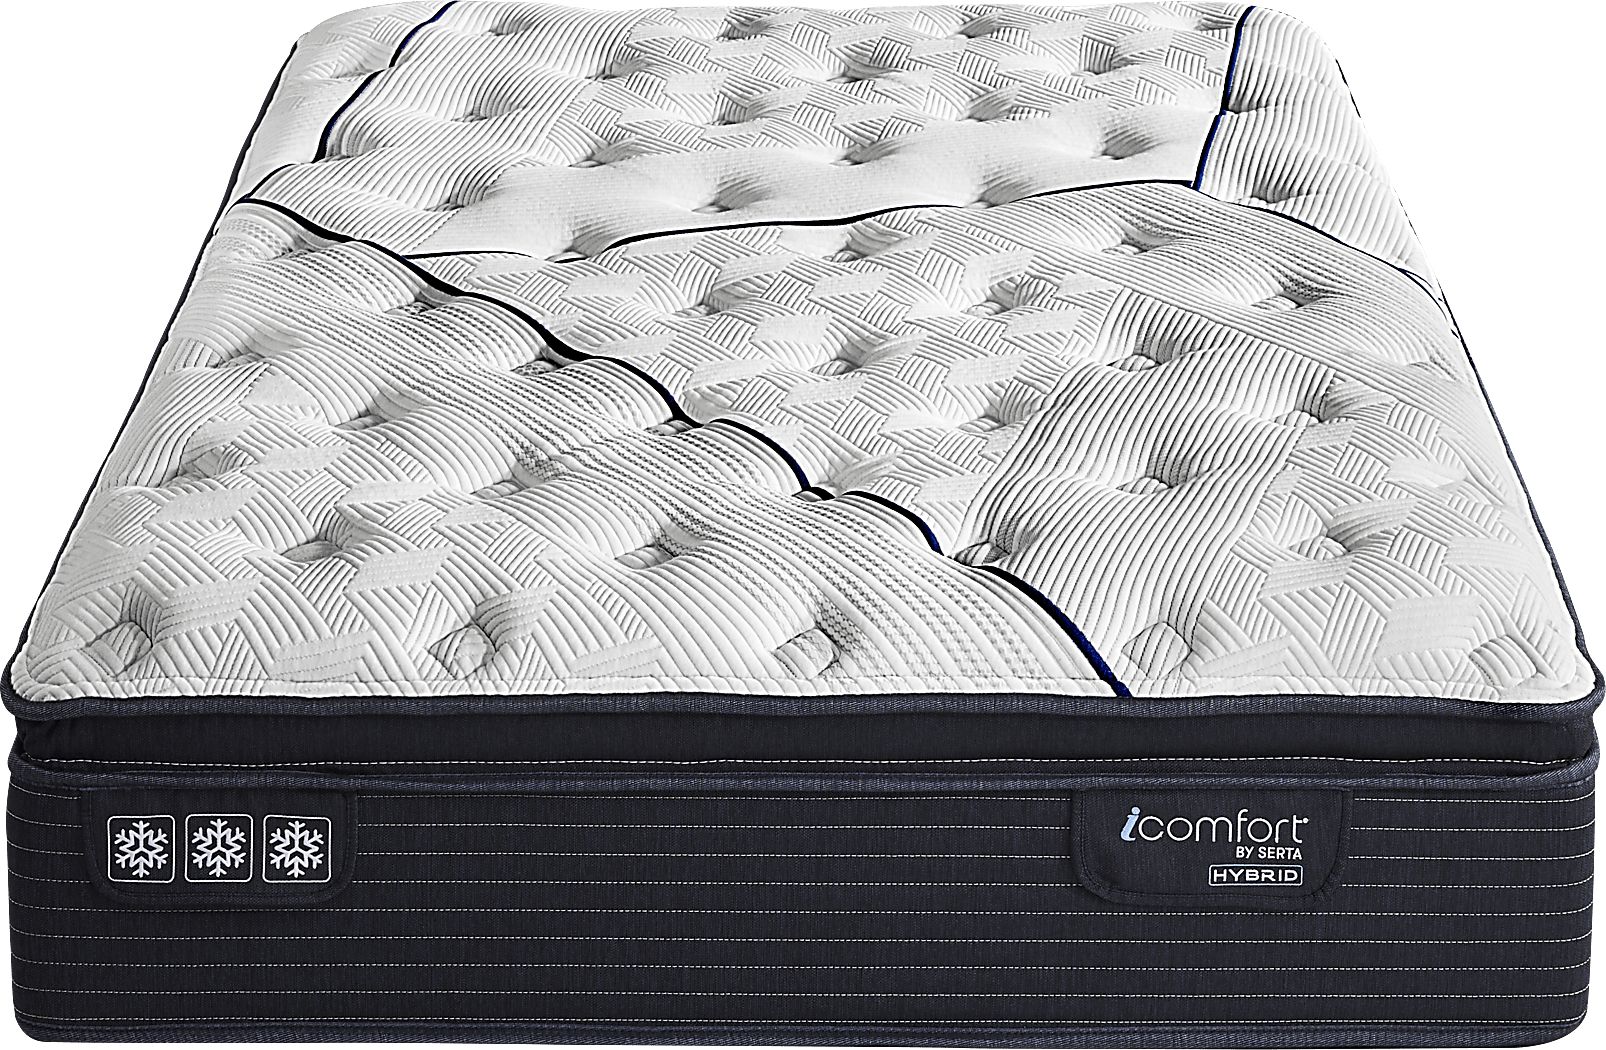 serta icomfort expertise super pillowtop mattress